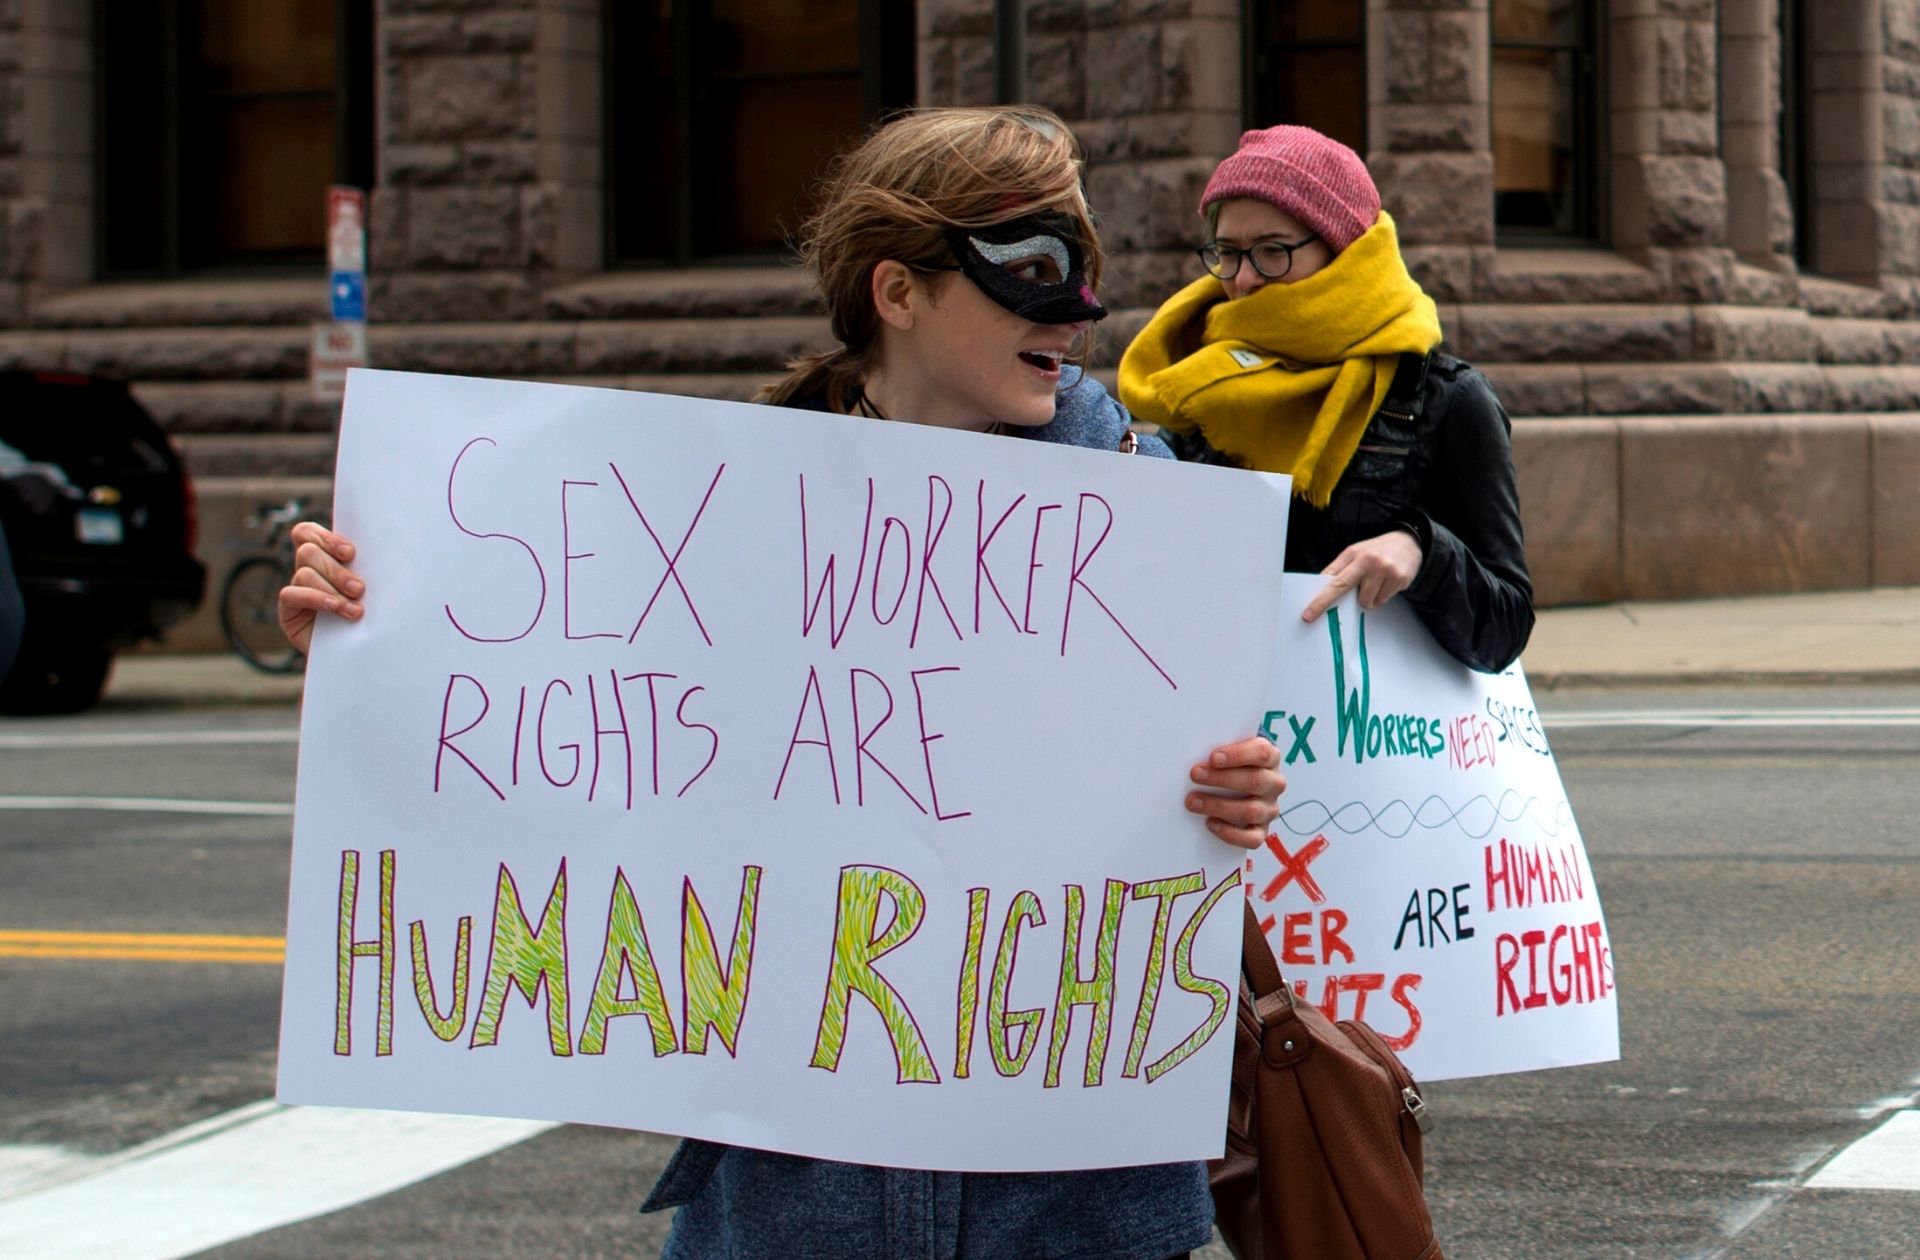 Travail du sexe et lutte contre les violences sexuelles : la Belgique  montre la voie en réformant son droit pénal sexuel - Madmoizelle